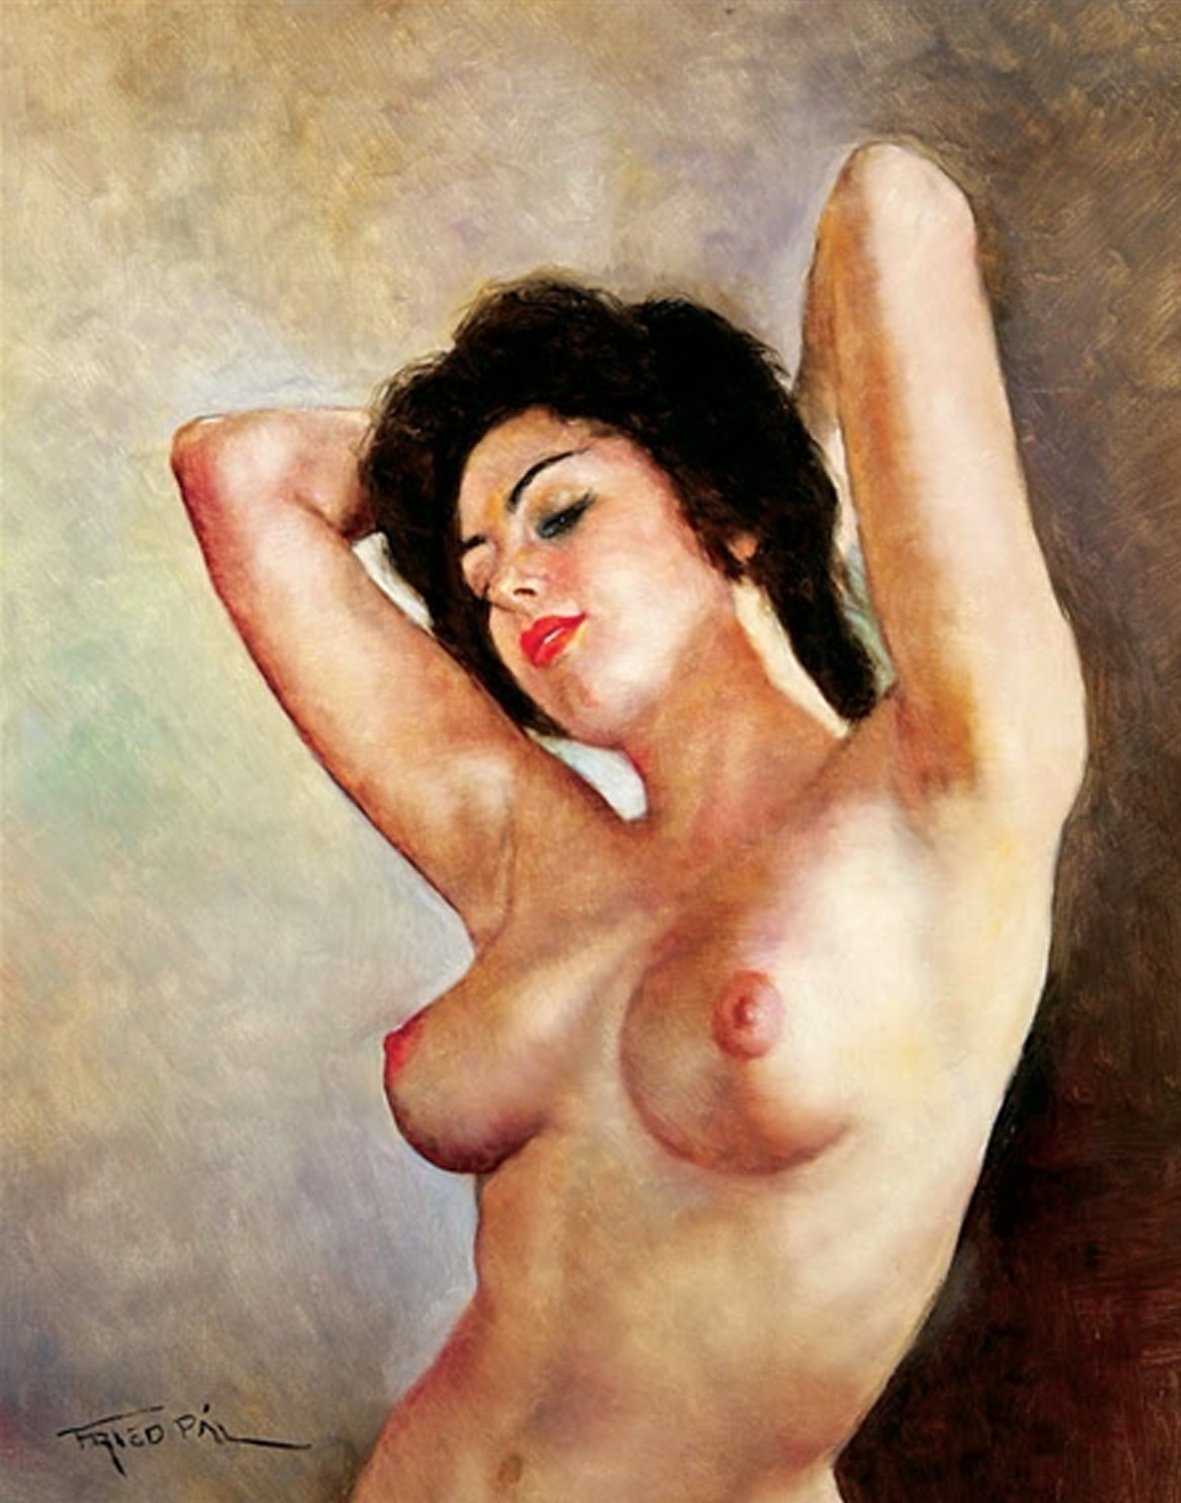 художник рисует на голых женщинах фото 89